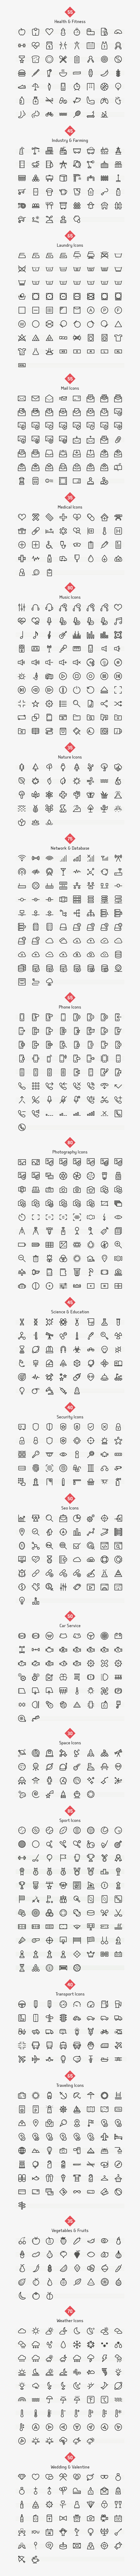 2300 Custom font icons